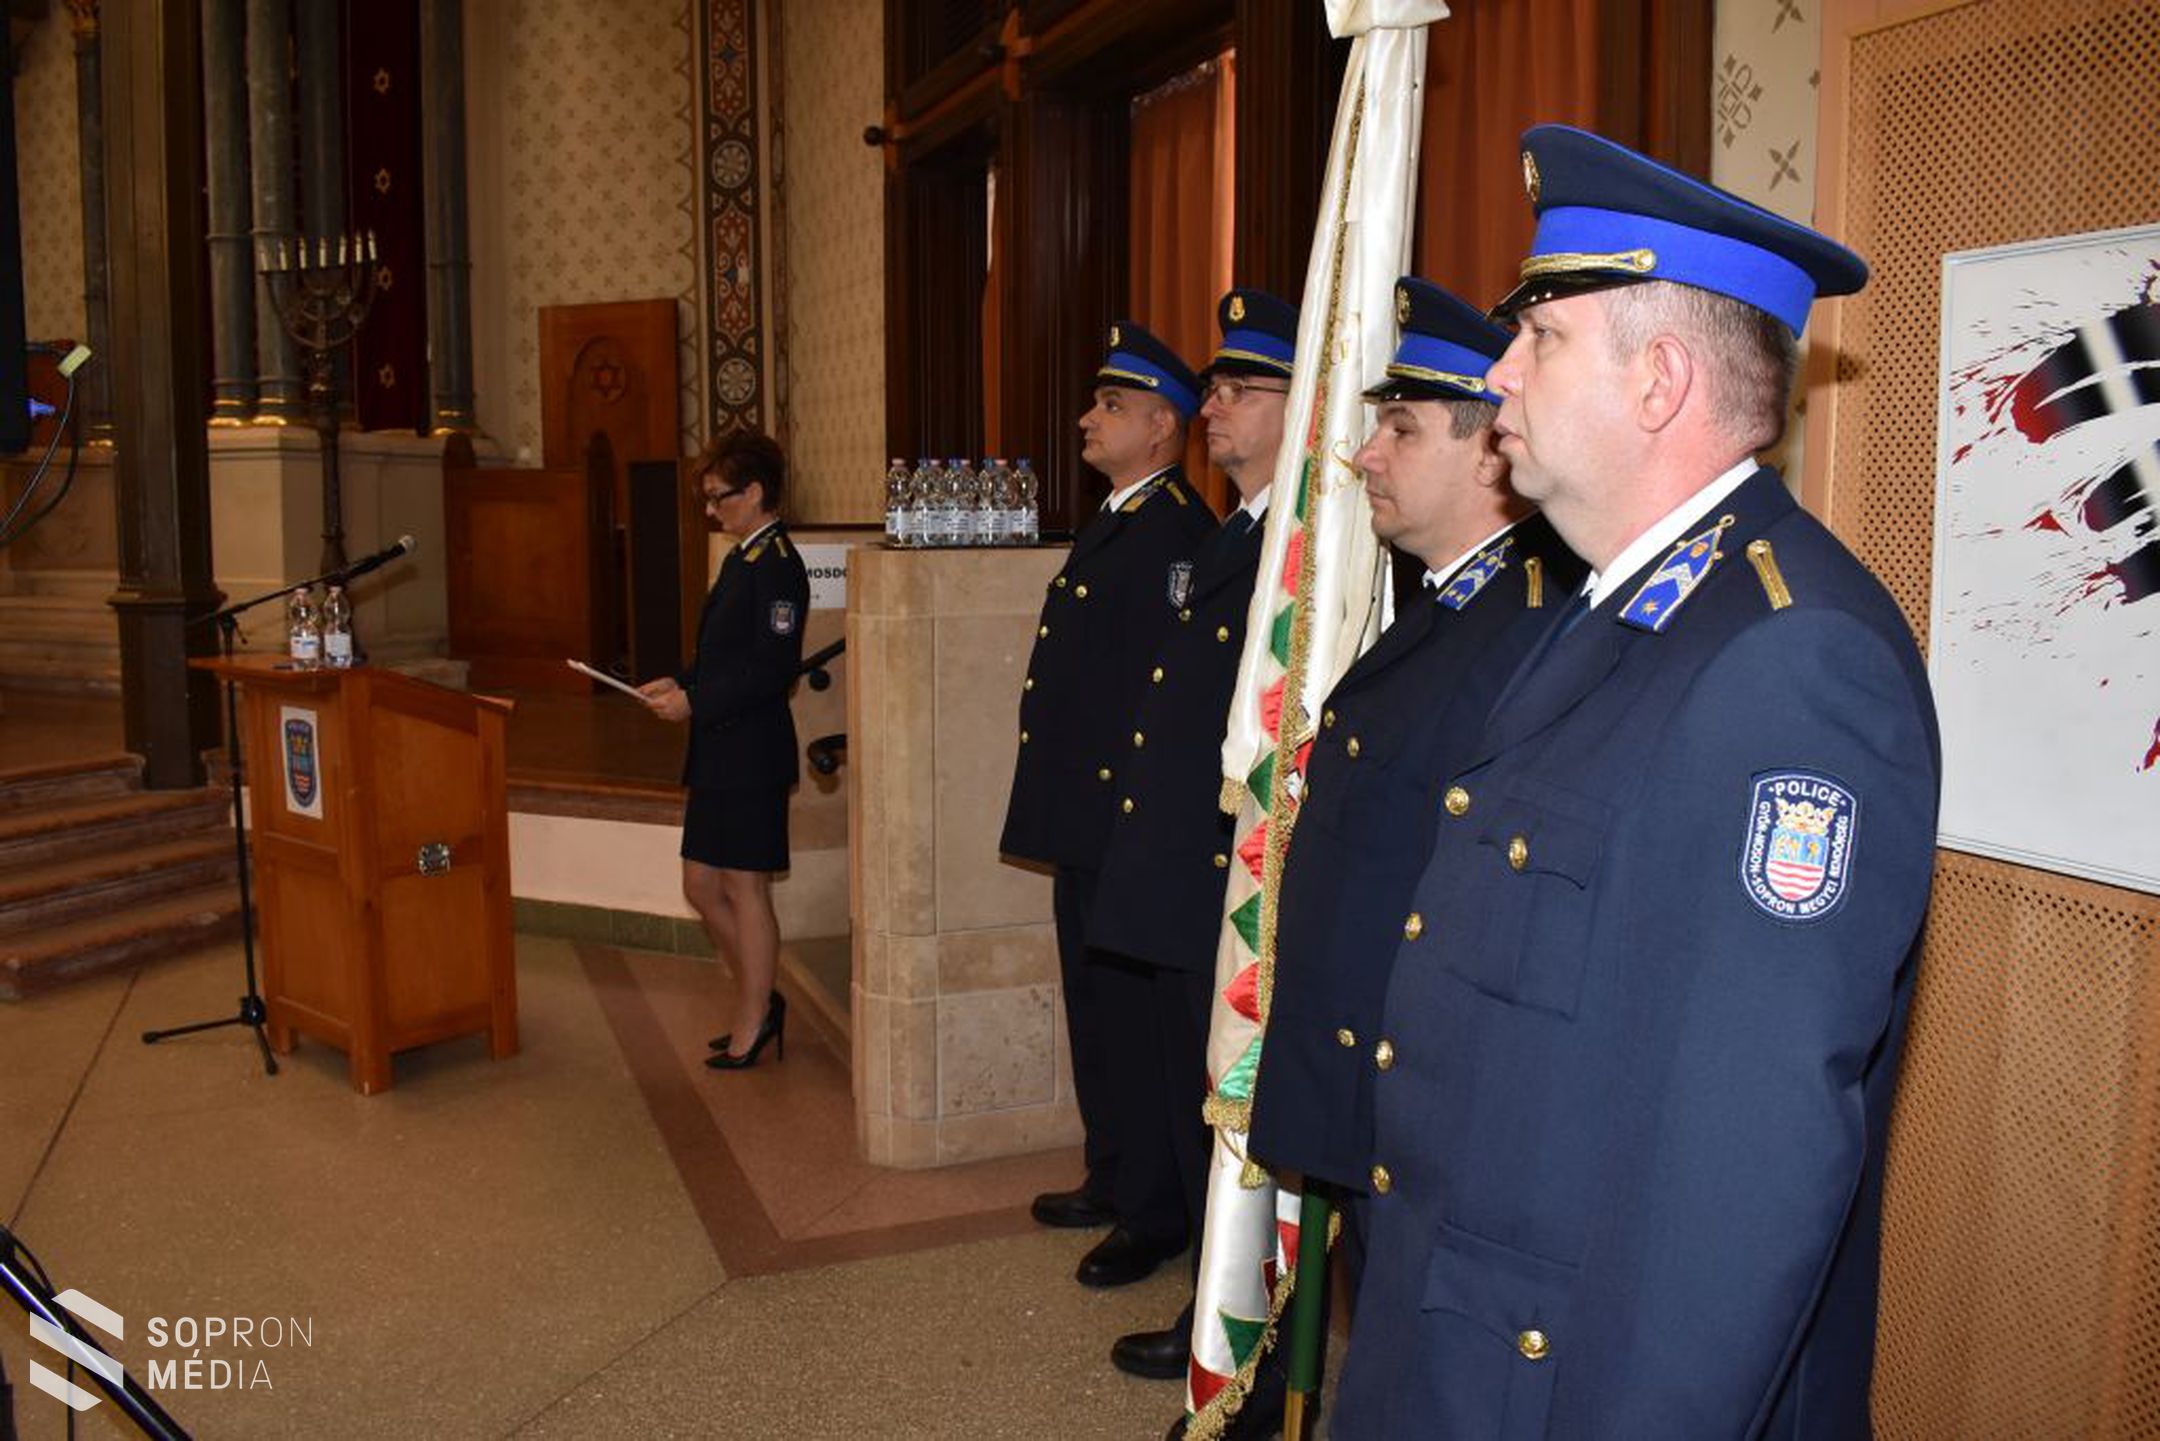 A Soproni Rendőrkapitányság szakembereit is díjazták a rendőrség napja alkalmából